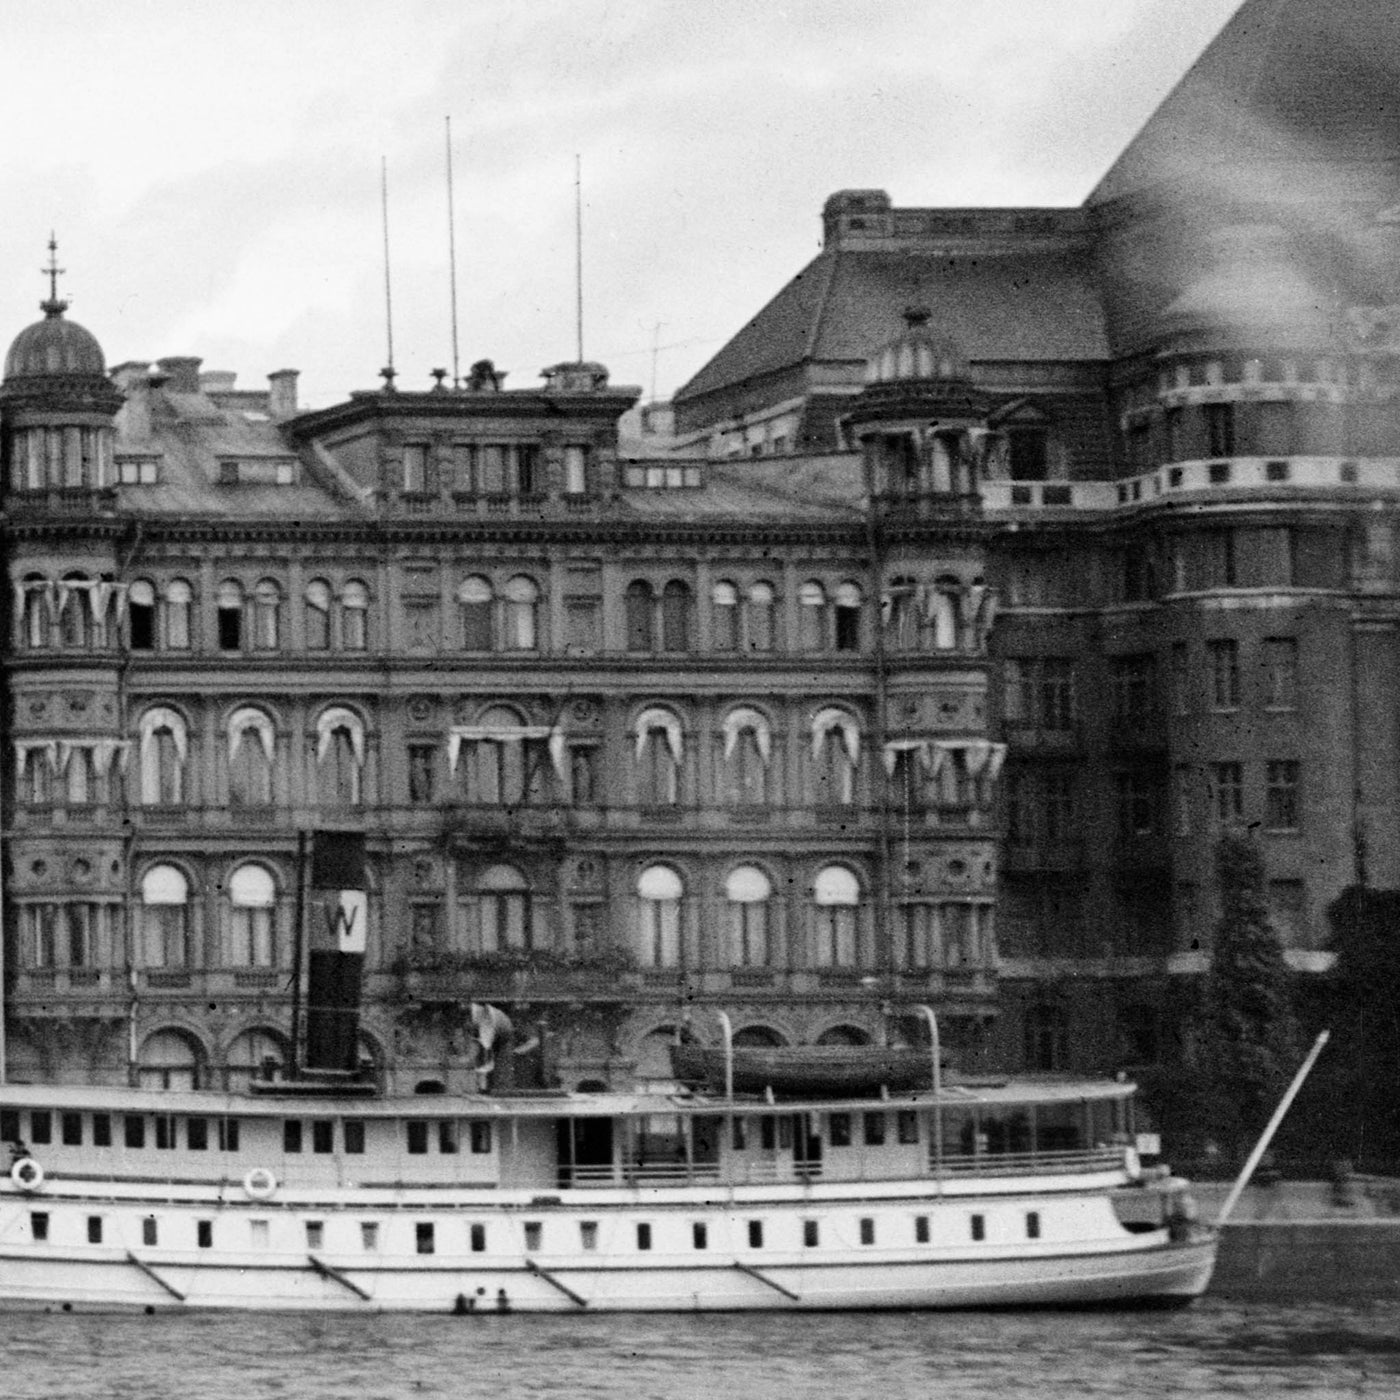 Grand Hotel och ångbåtar 1927